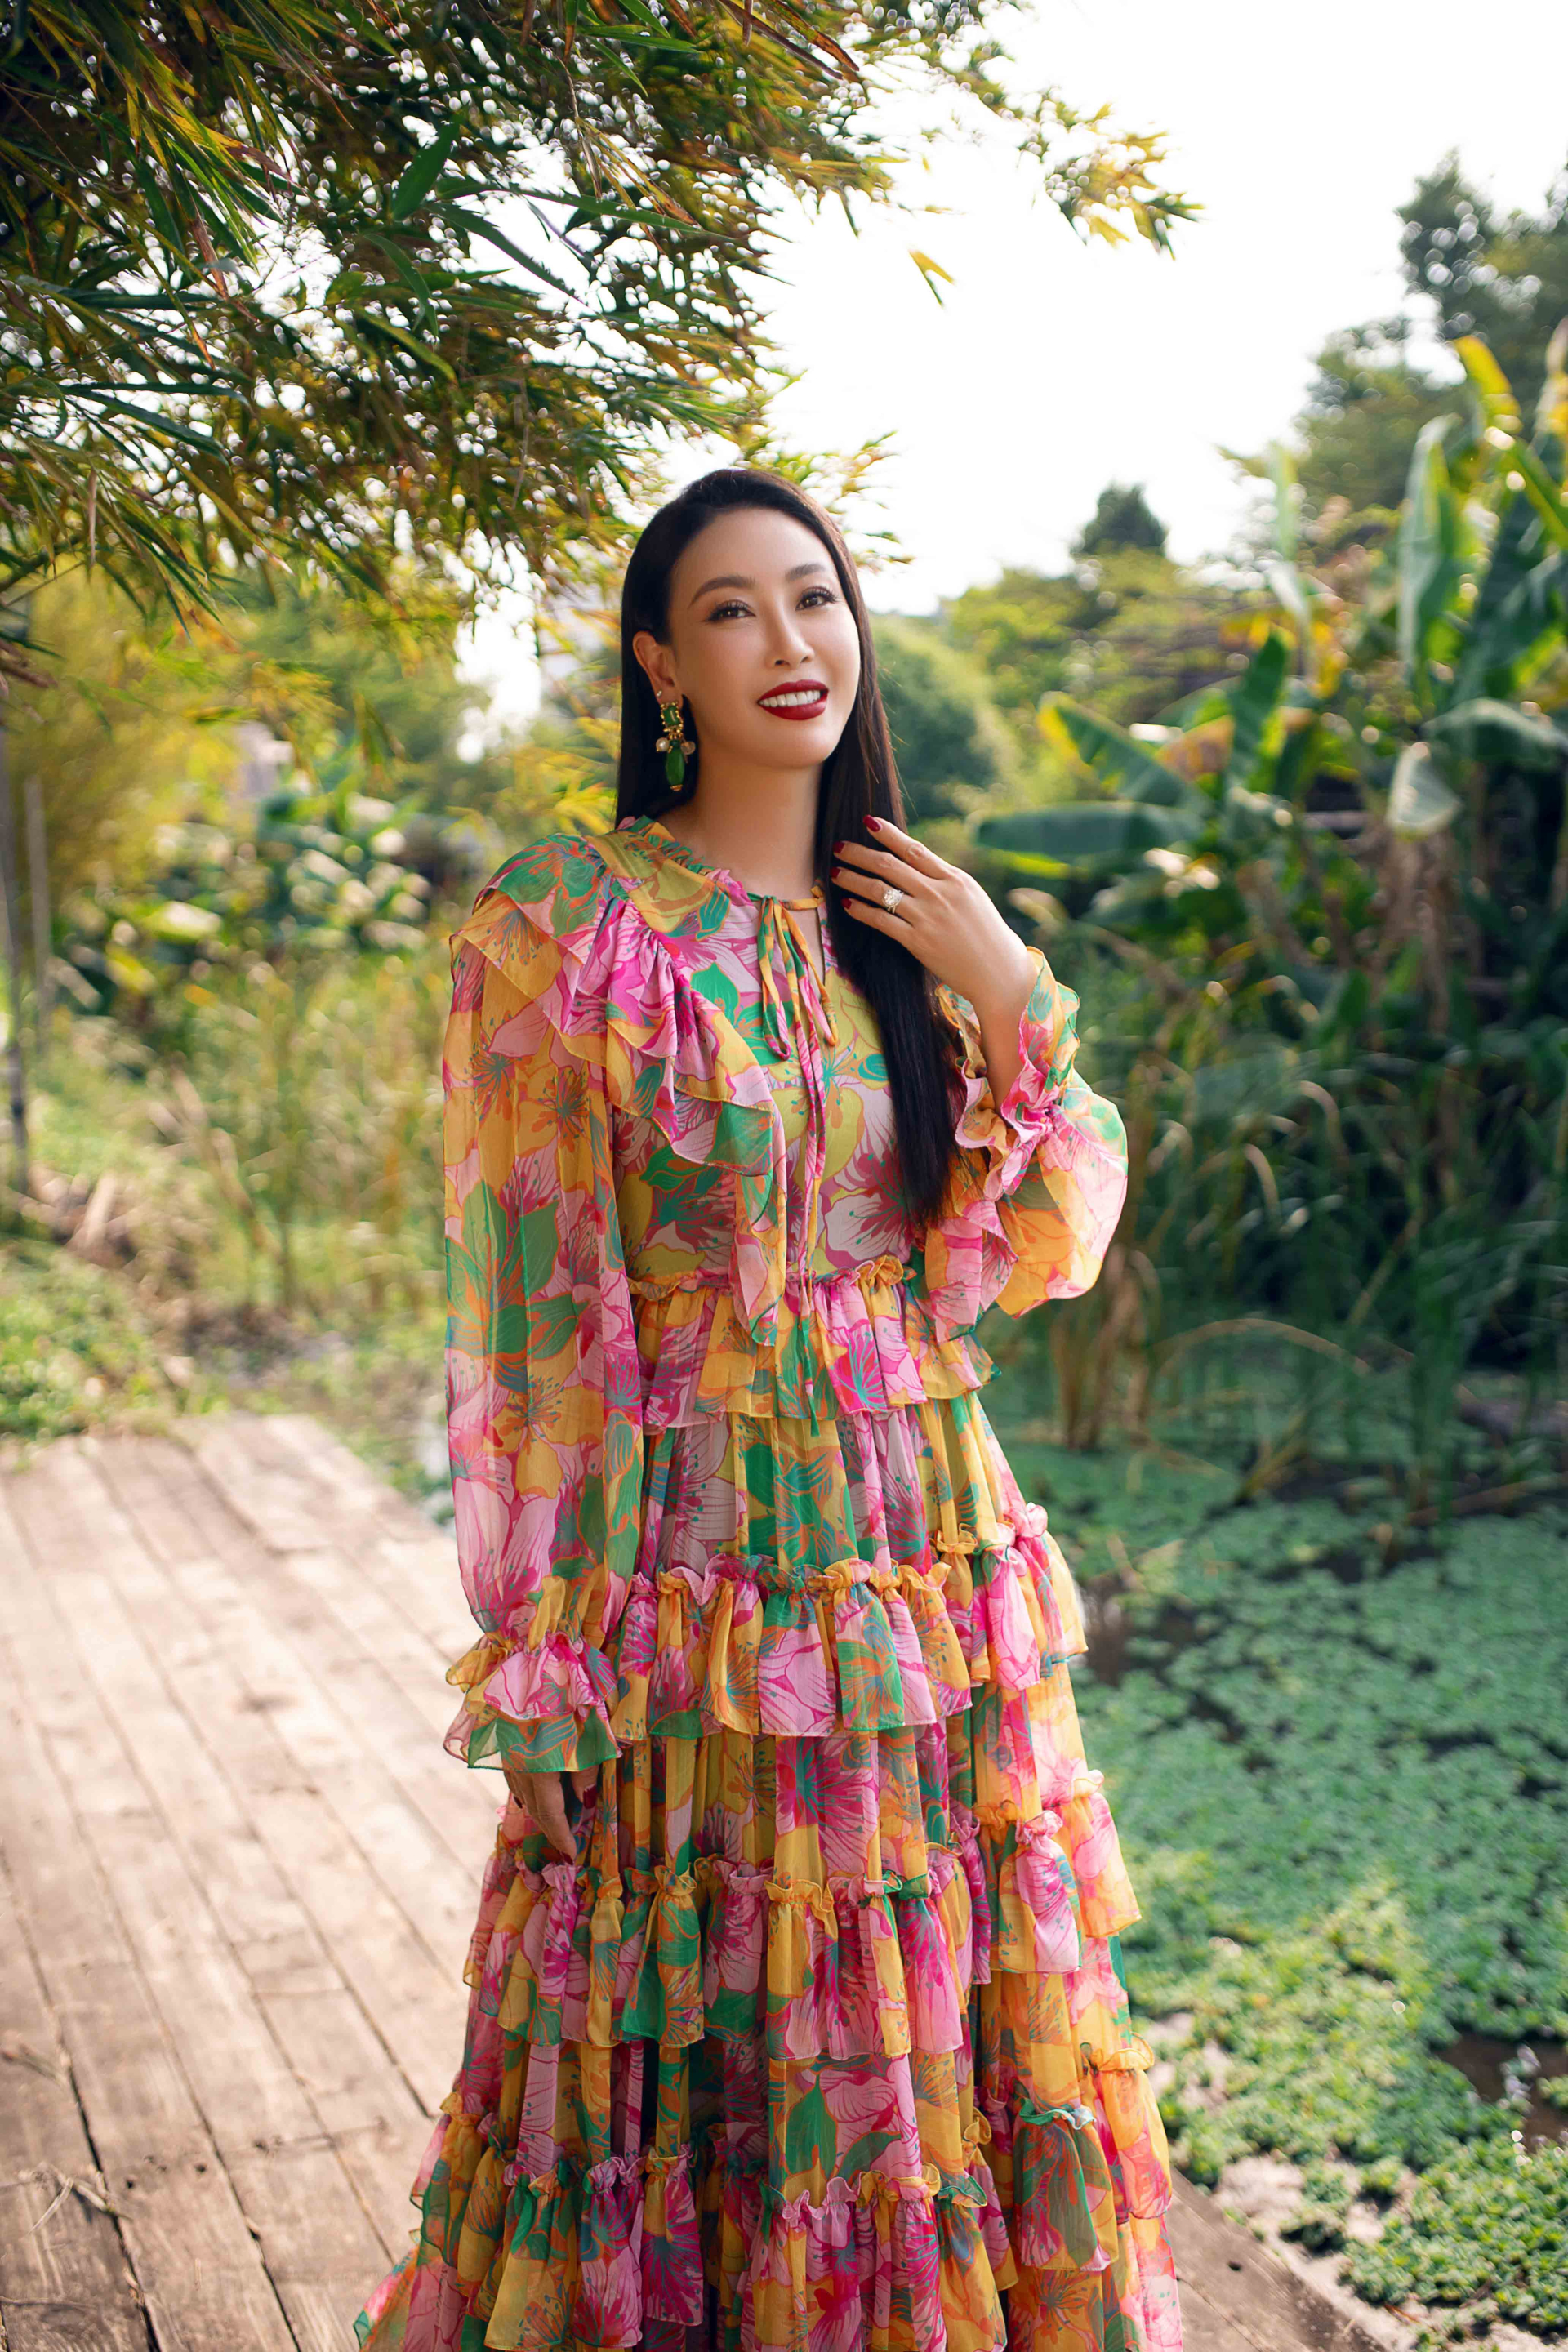 Hoa hậu Hà Kiều Anh khoe sắc trong 5 thiết kế cùng họa tiết Xuân hè - ảnh 4